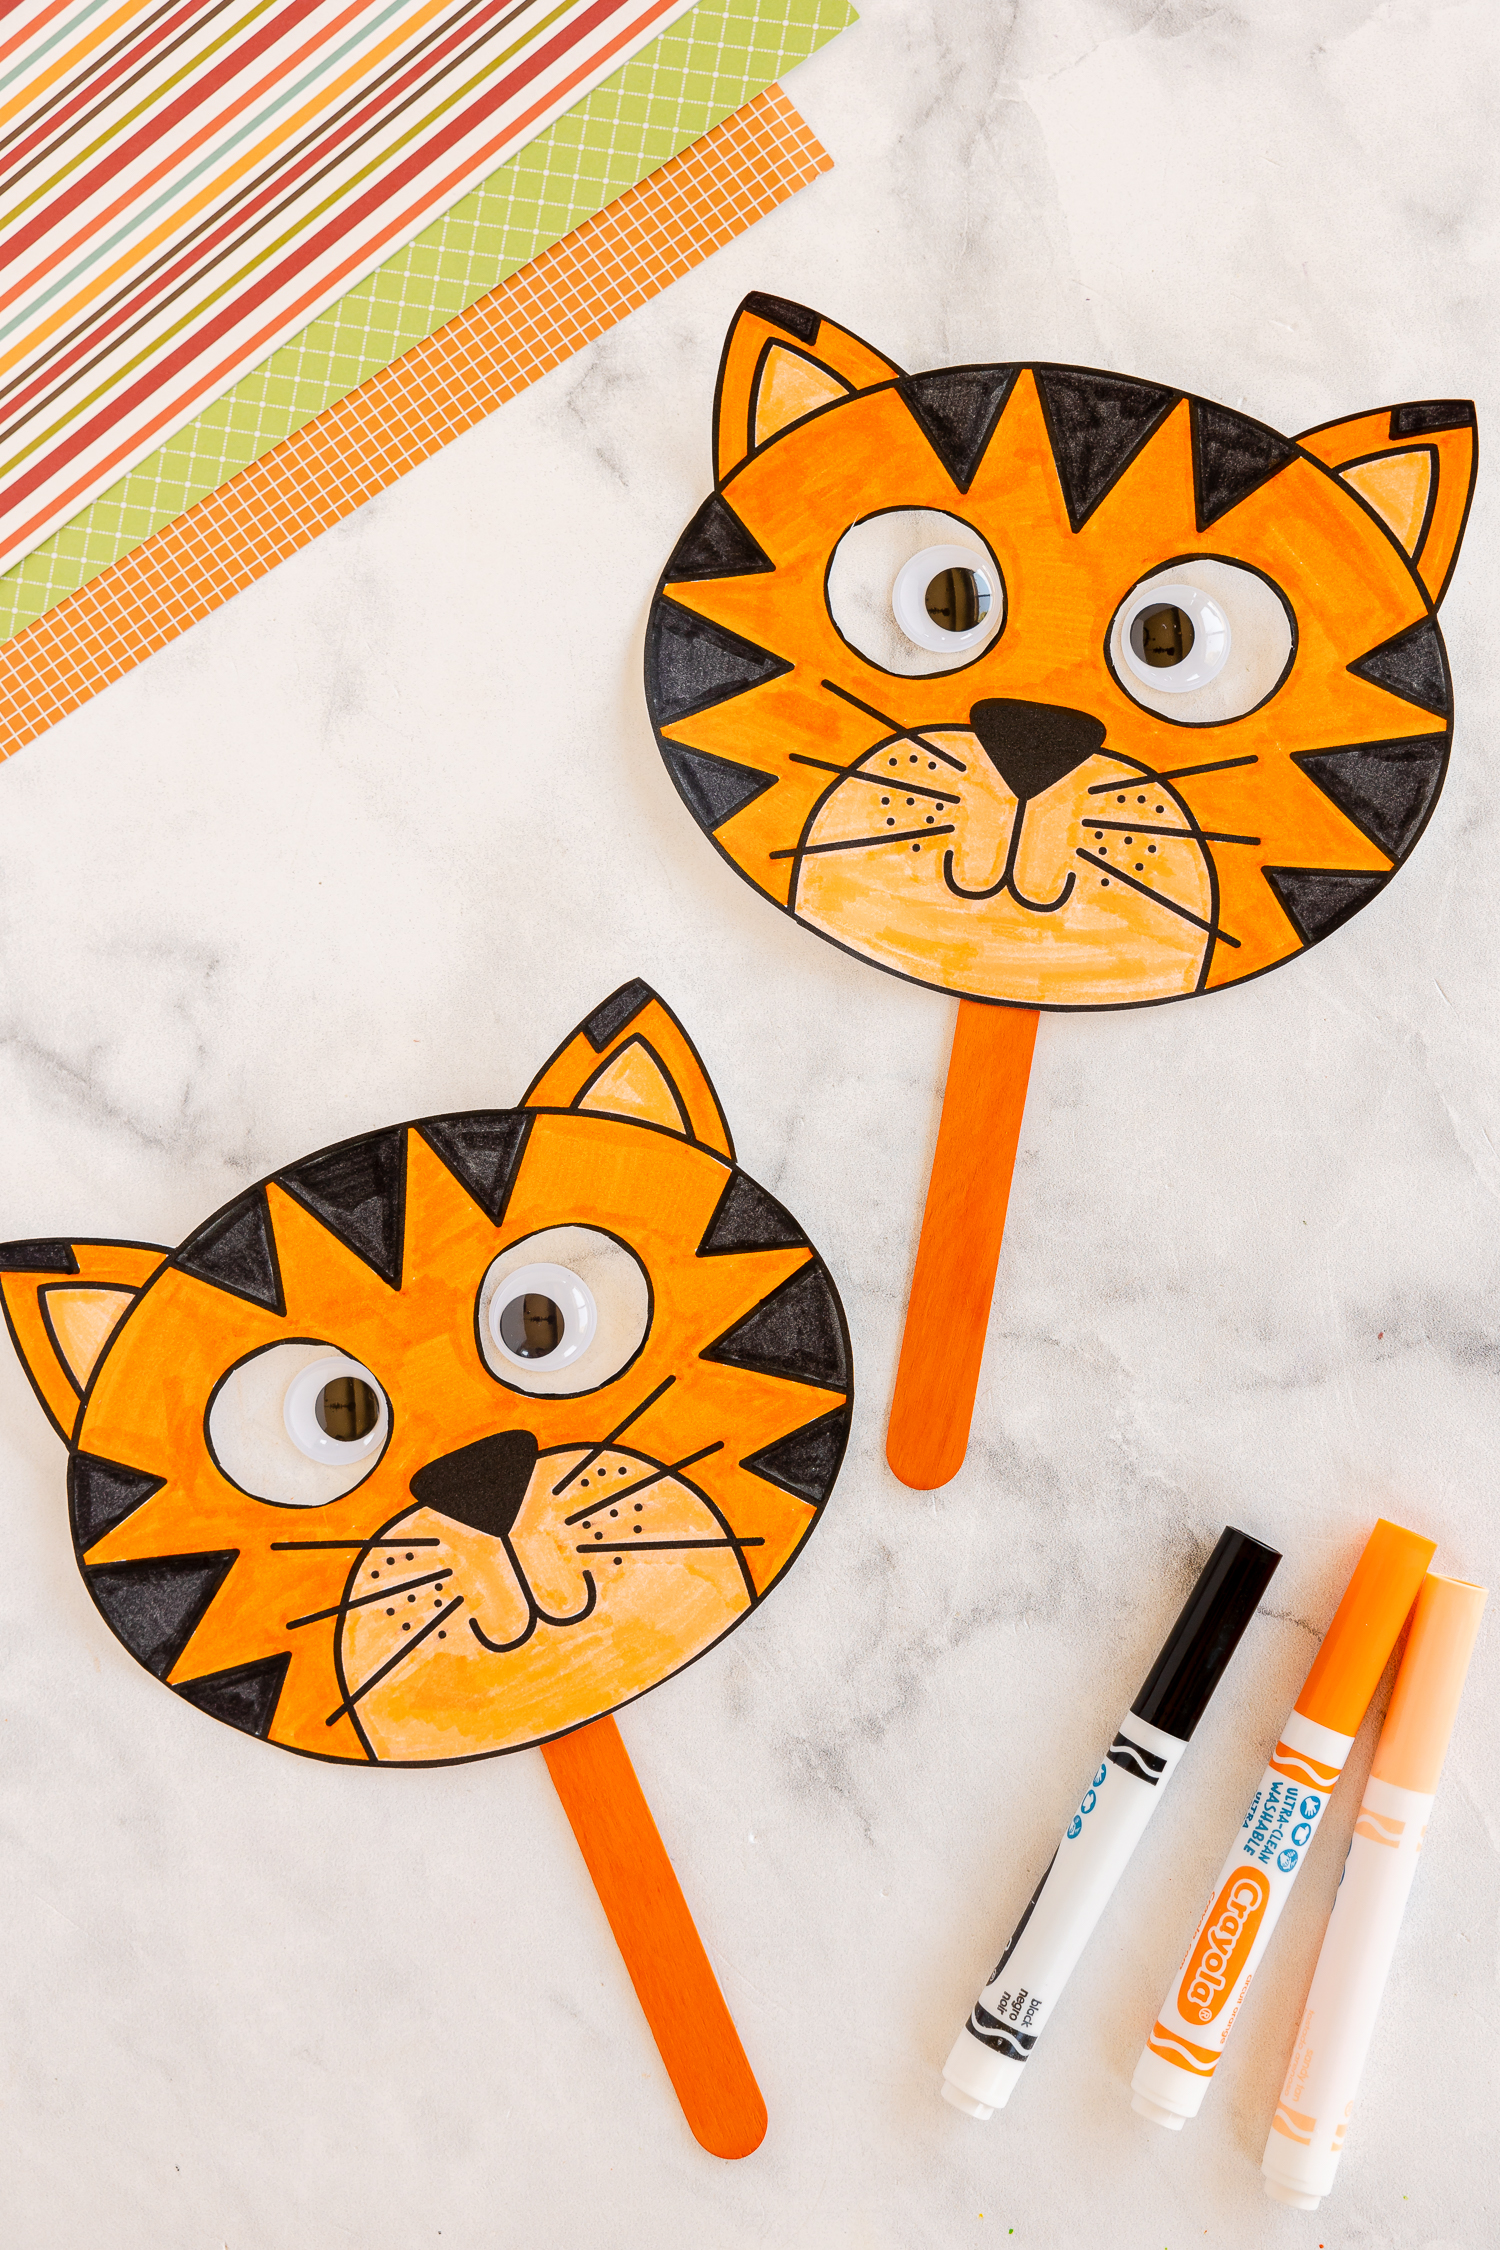 Tiger Mask Craft For Kids